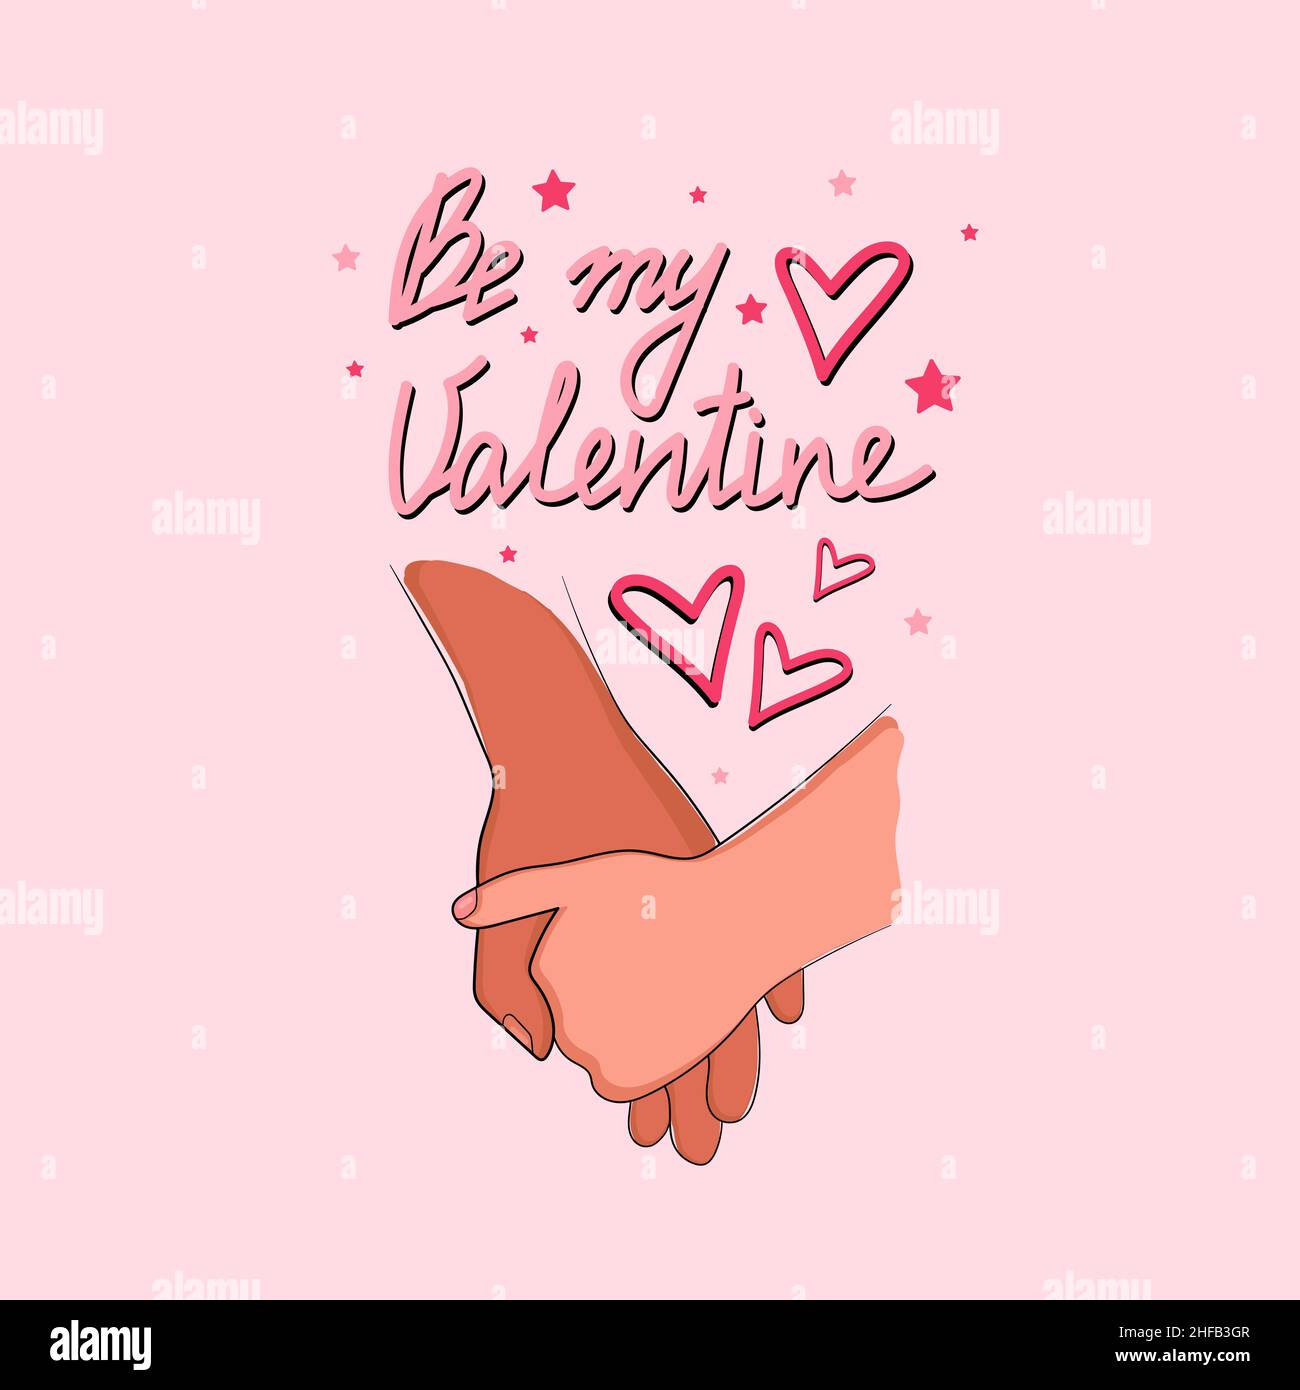 Zwei Hände romantische Symbole für Valentinstag gesetzt, werden meine Valentinstag Text. Vektorgrafik Stock Vektor